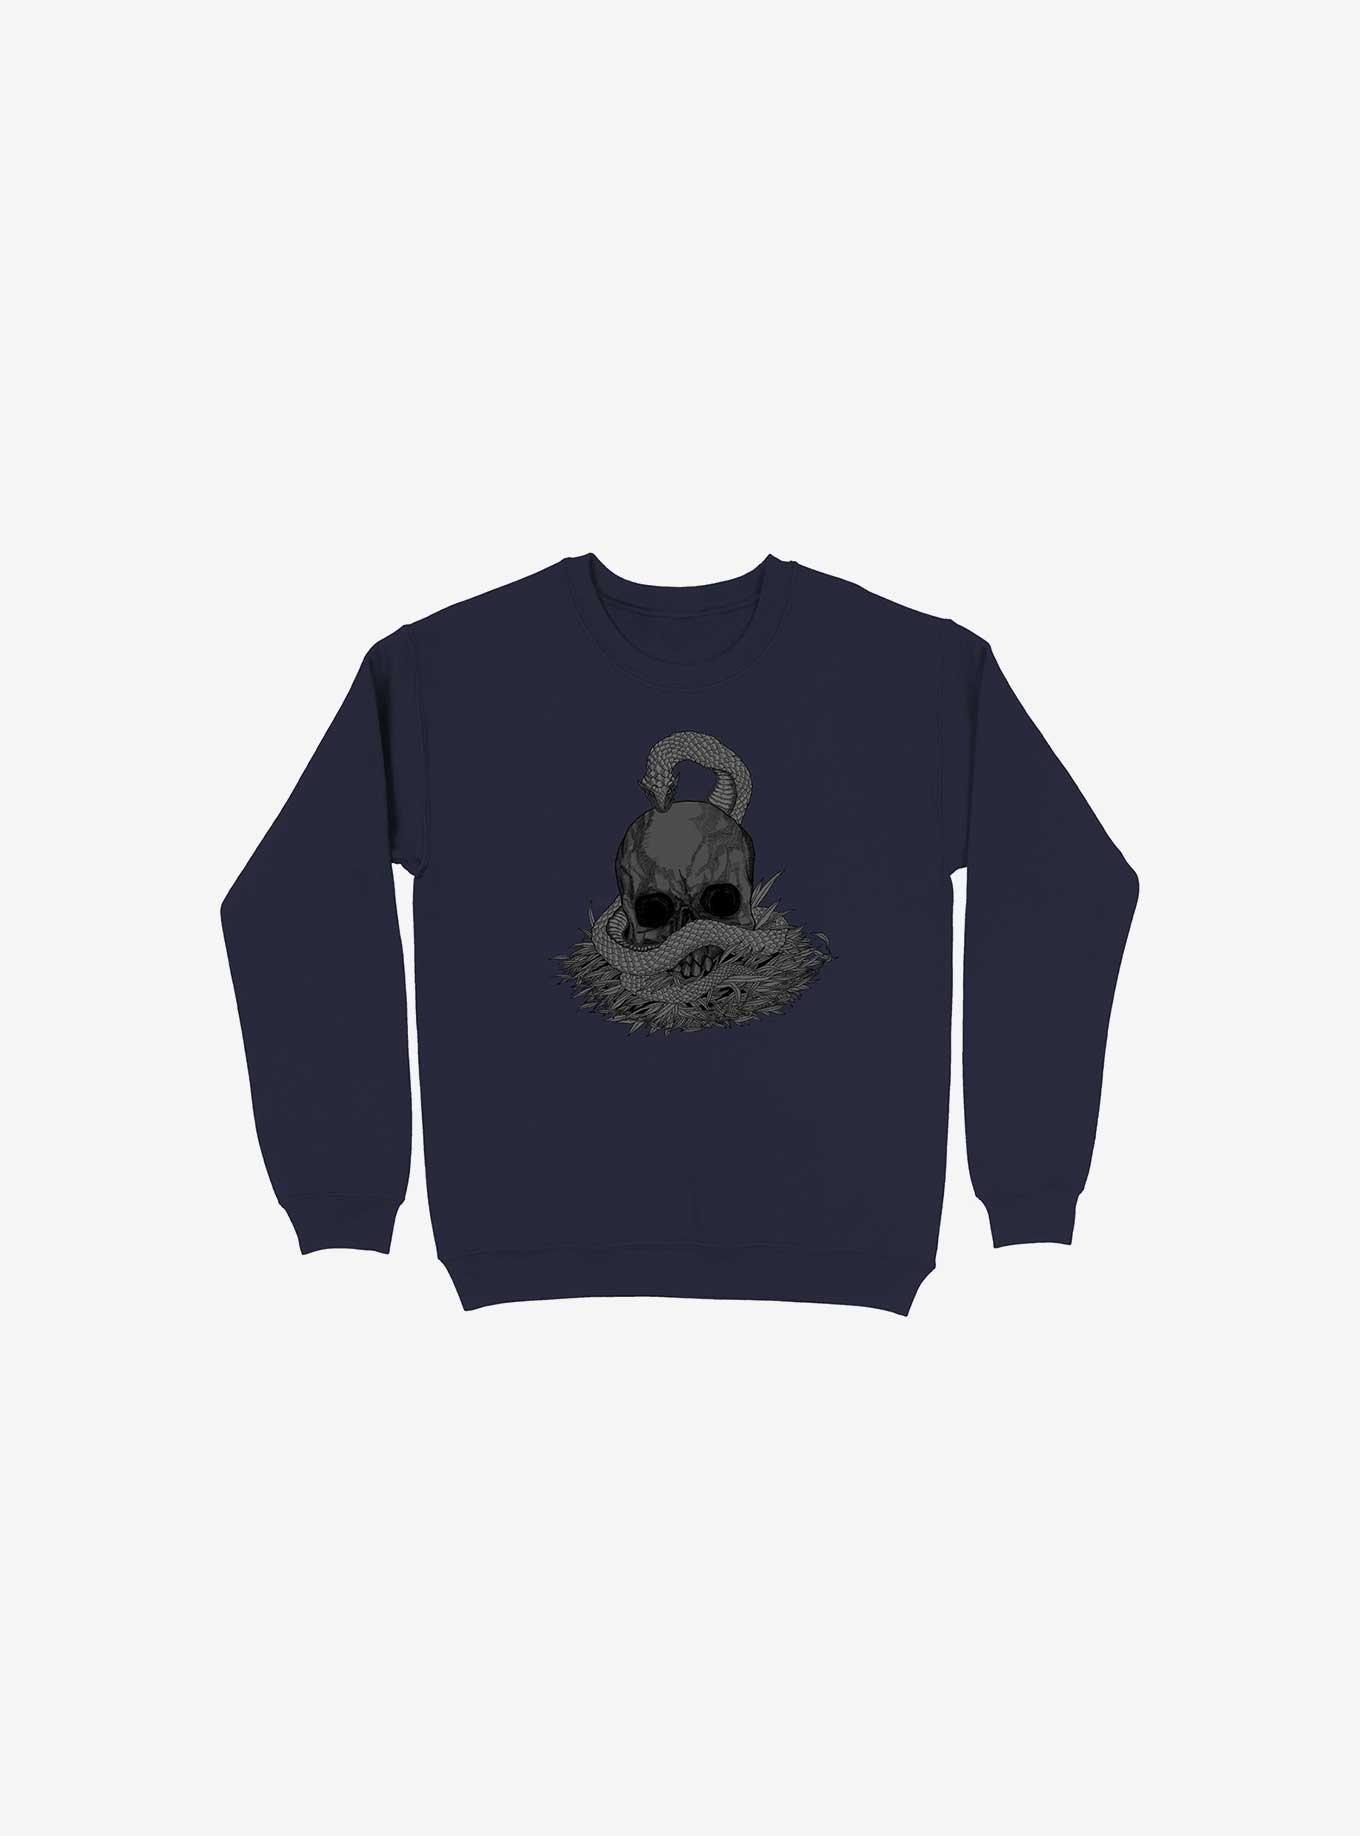 Snake & Skull Navy Blue Sweatshirt, NAVY, hi-res